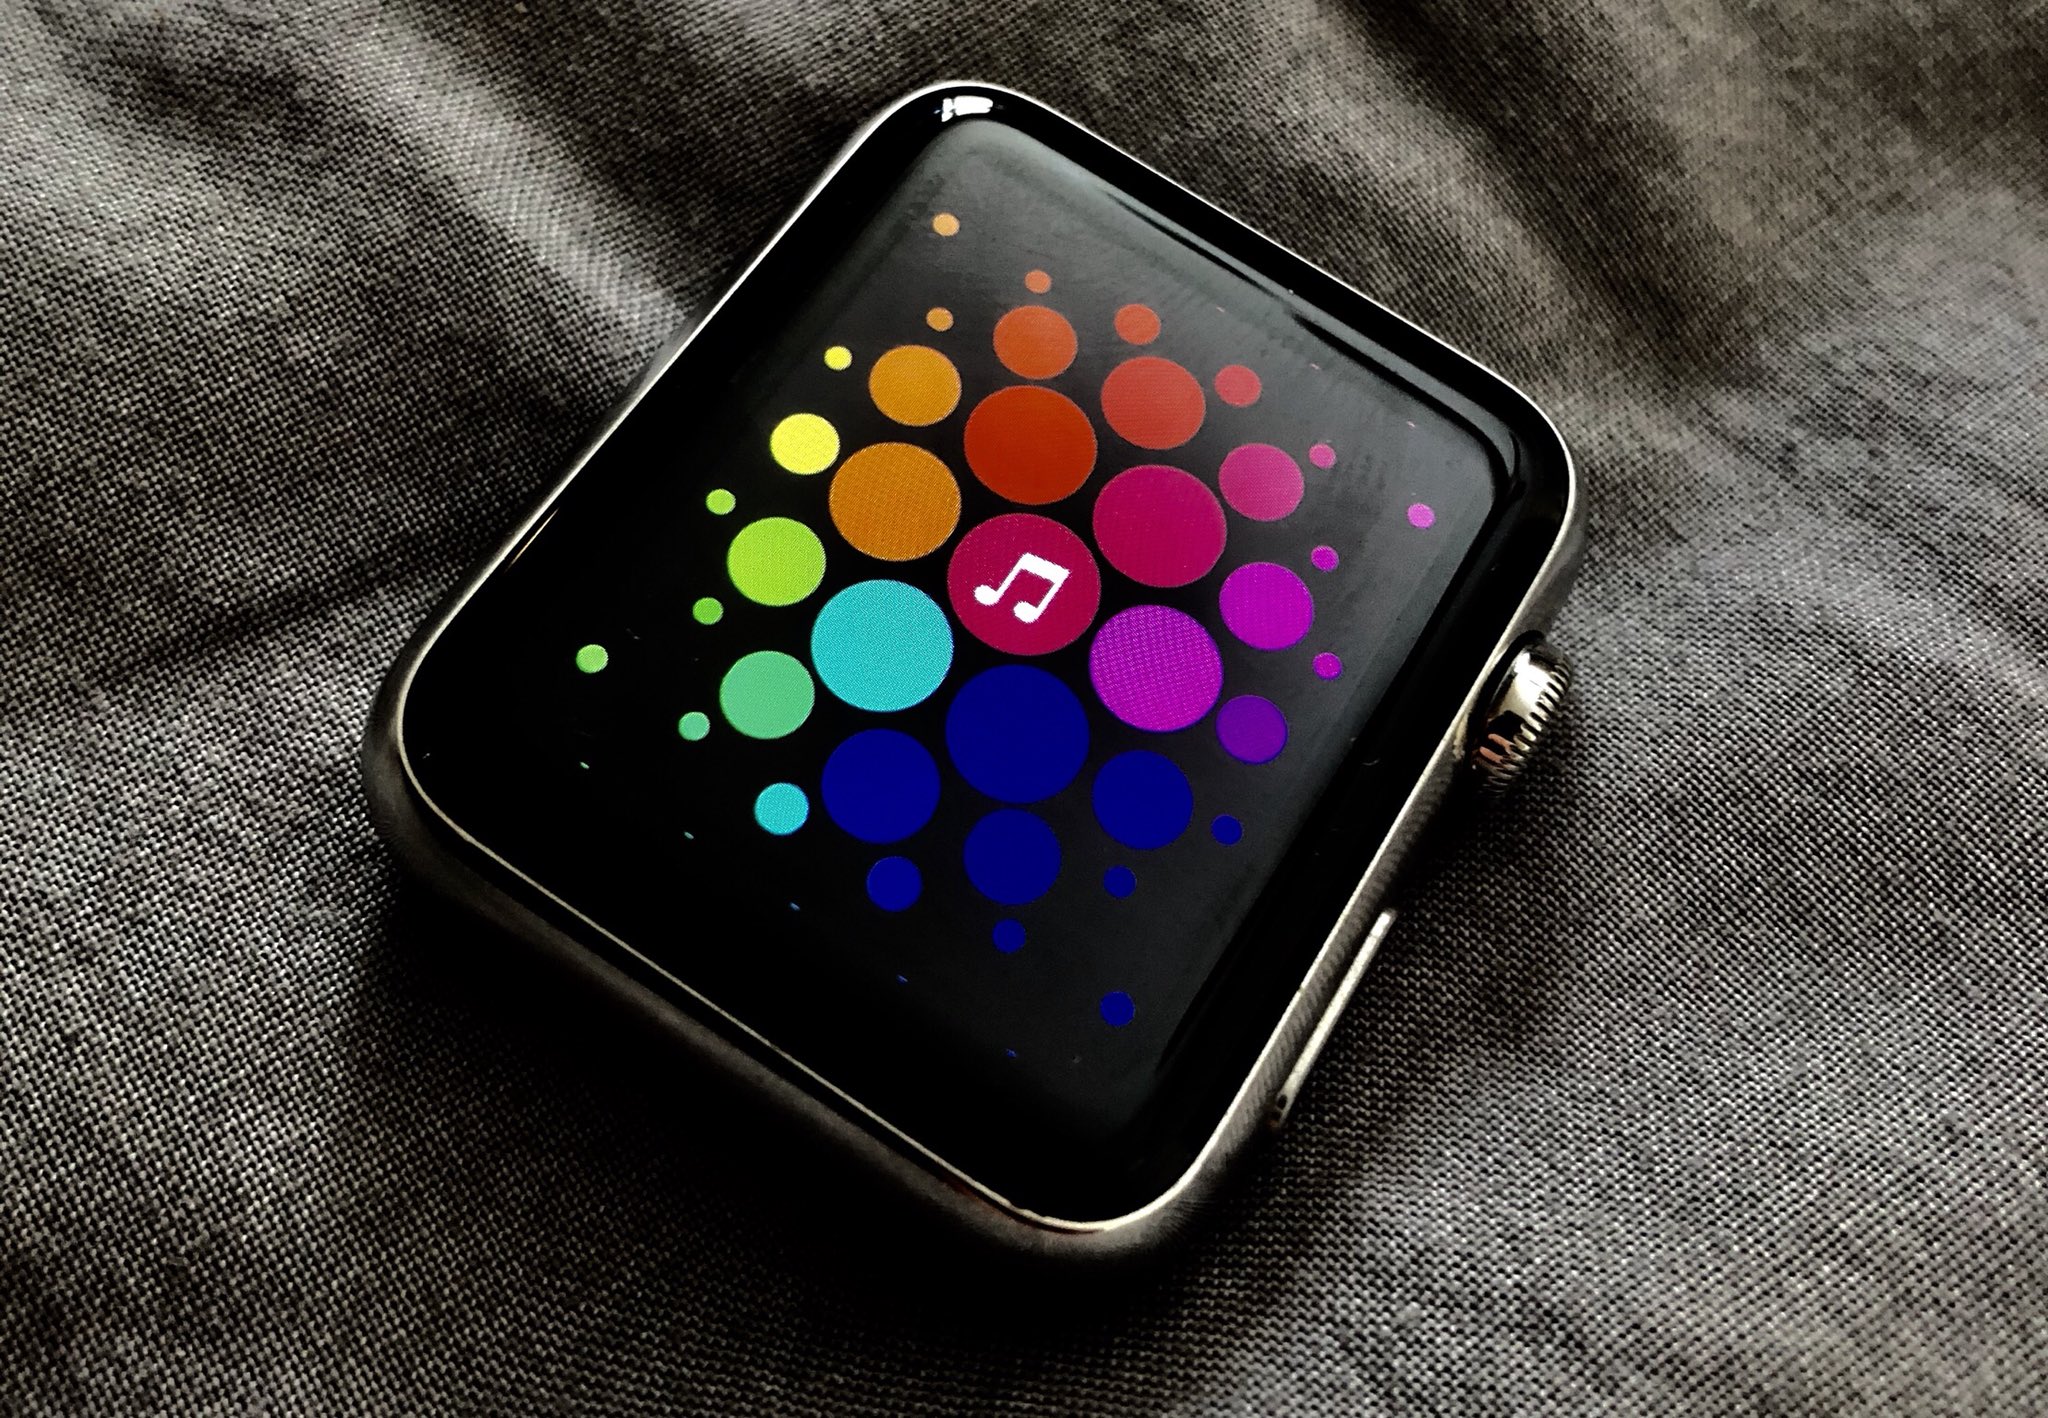 蘋果太奸詐！把初代 Apple Watch 原型機偽裝成 iPod | Apple News, Apple Watch, watchOS 1.0, 蘋果原型機 | iPhone News 愛瘋了